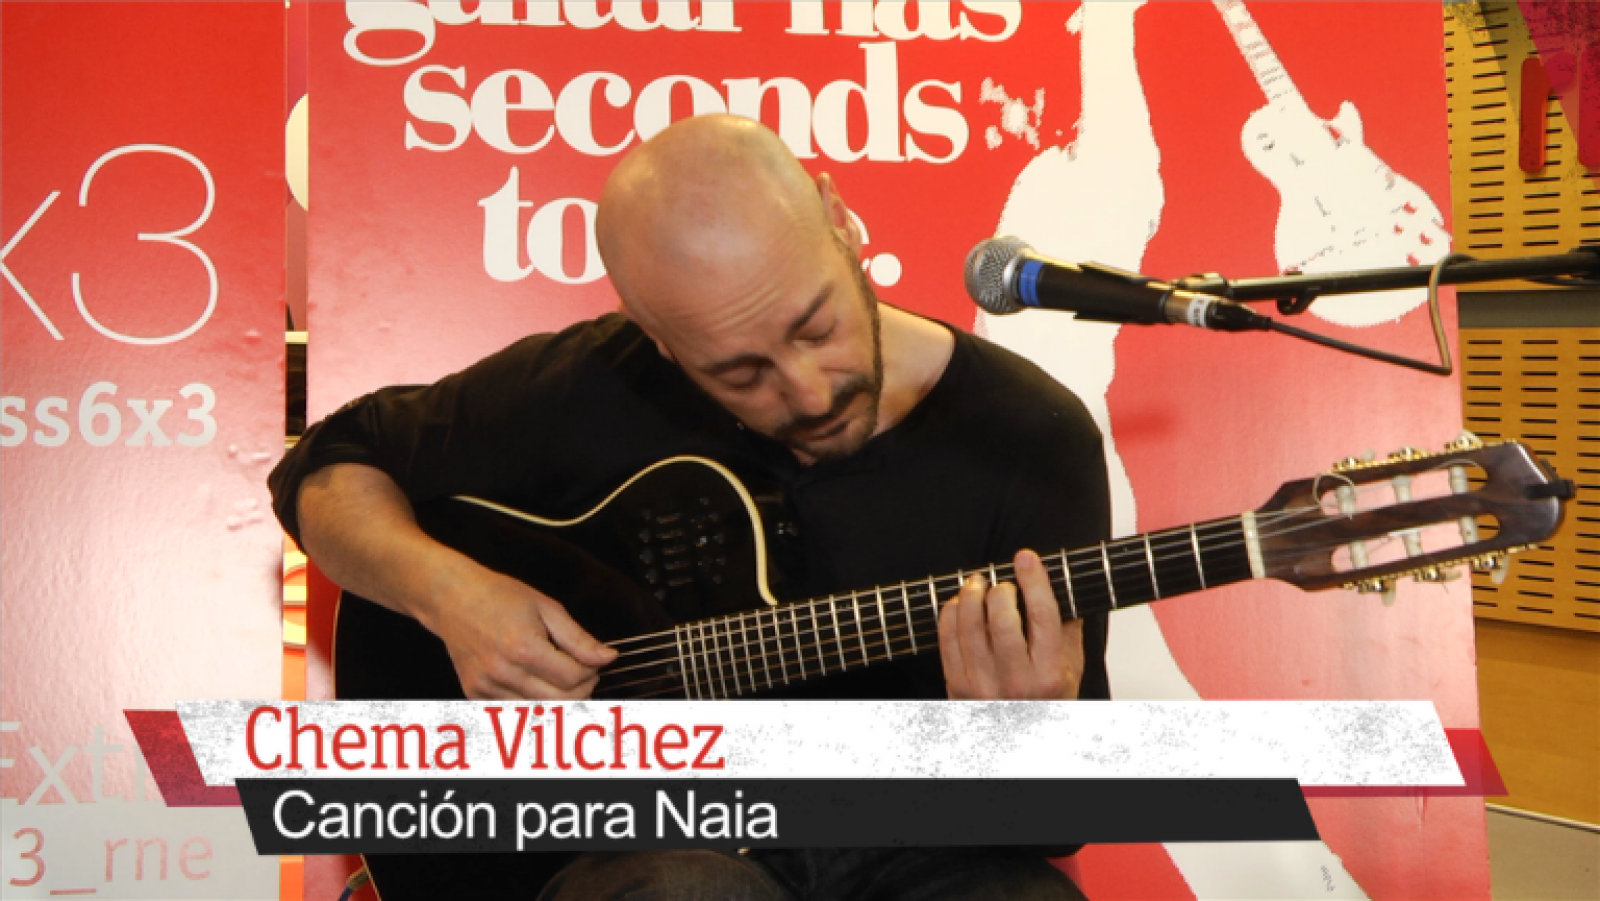 Masterclass 6x3 - 'Canción para Naia' de Chema Vílchez - 18/11/16